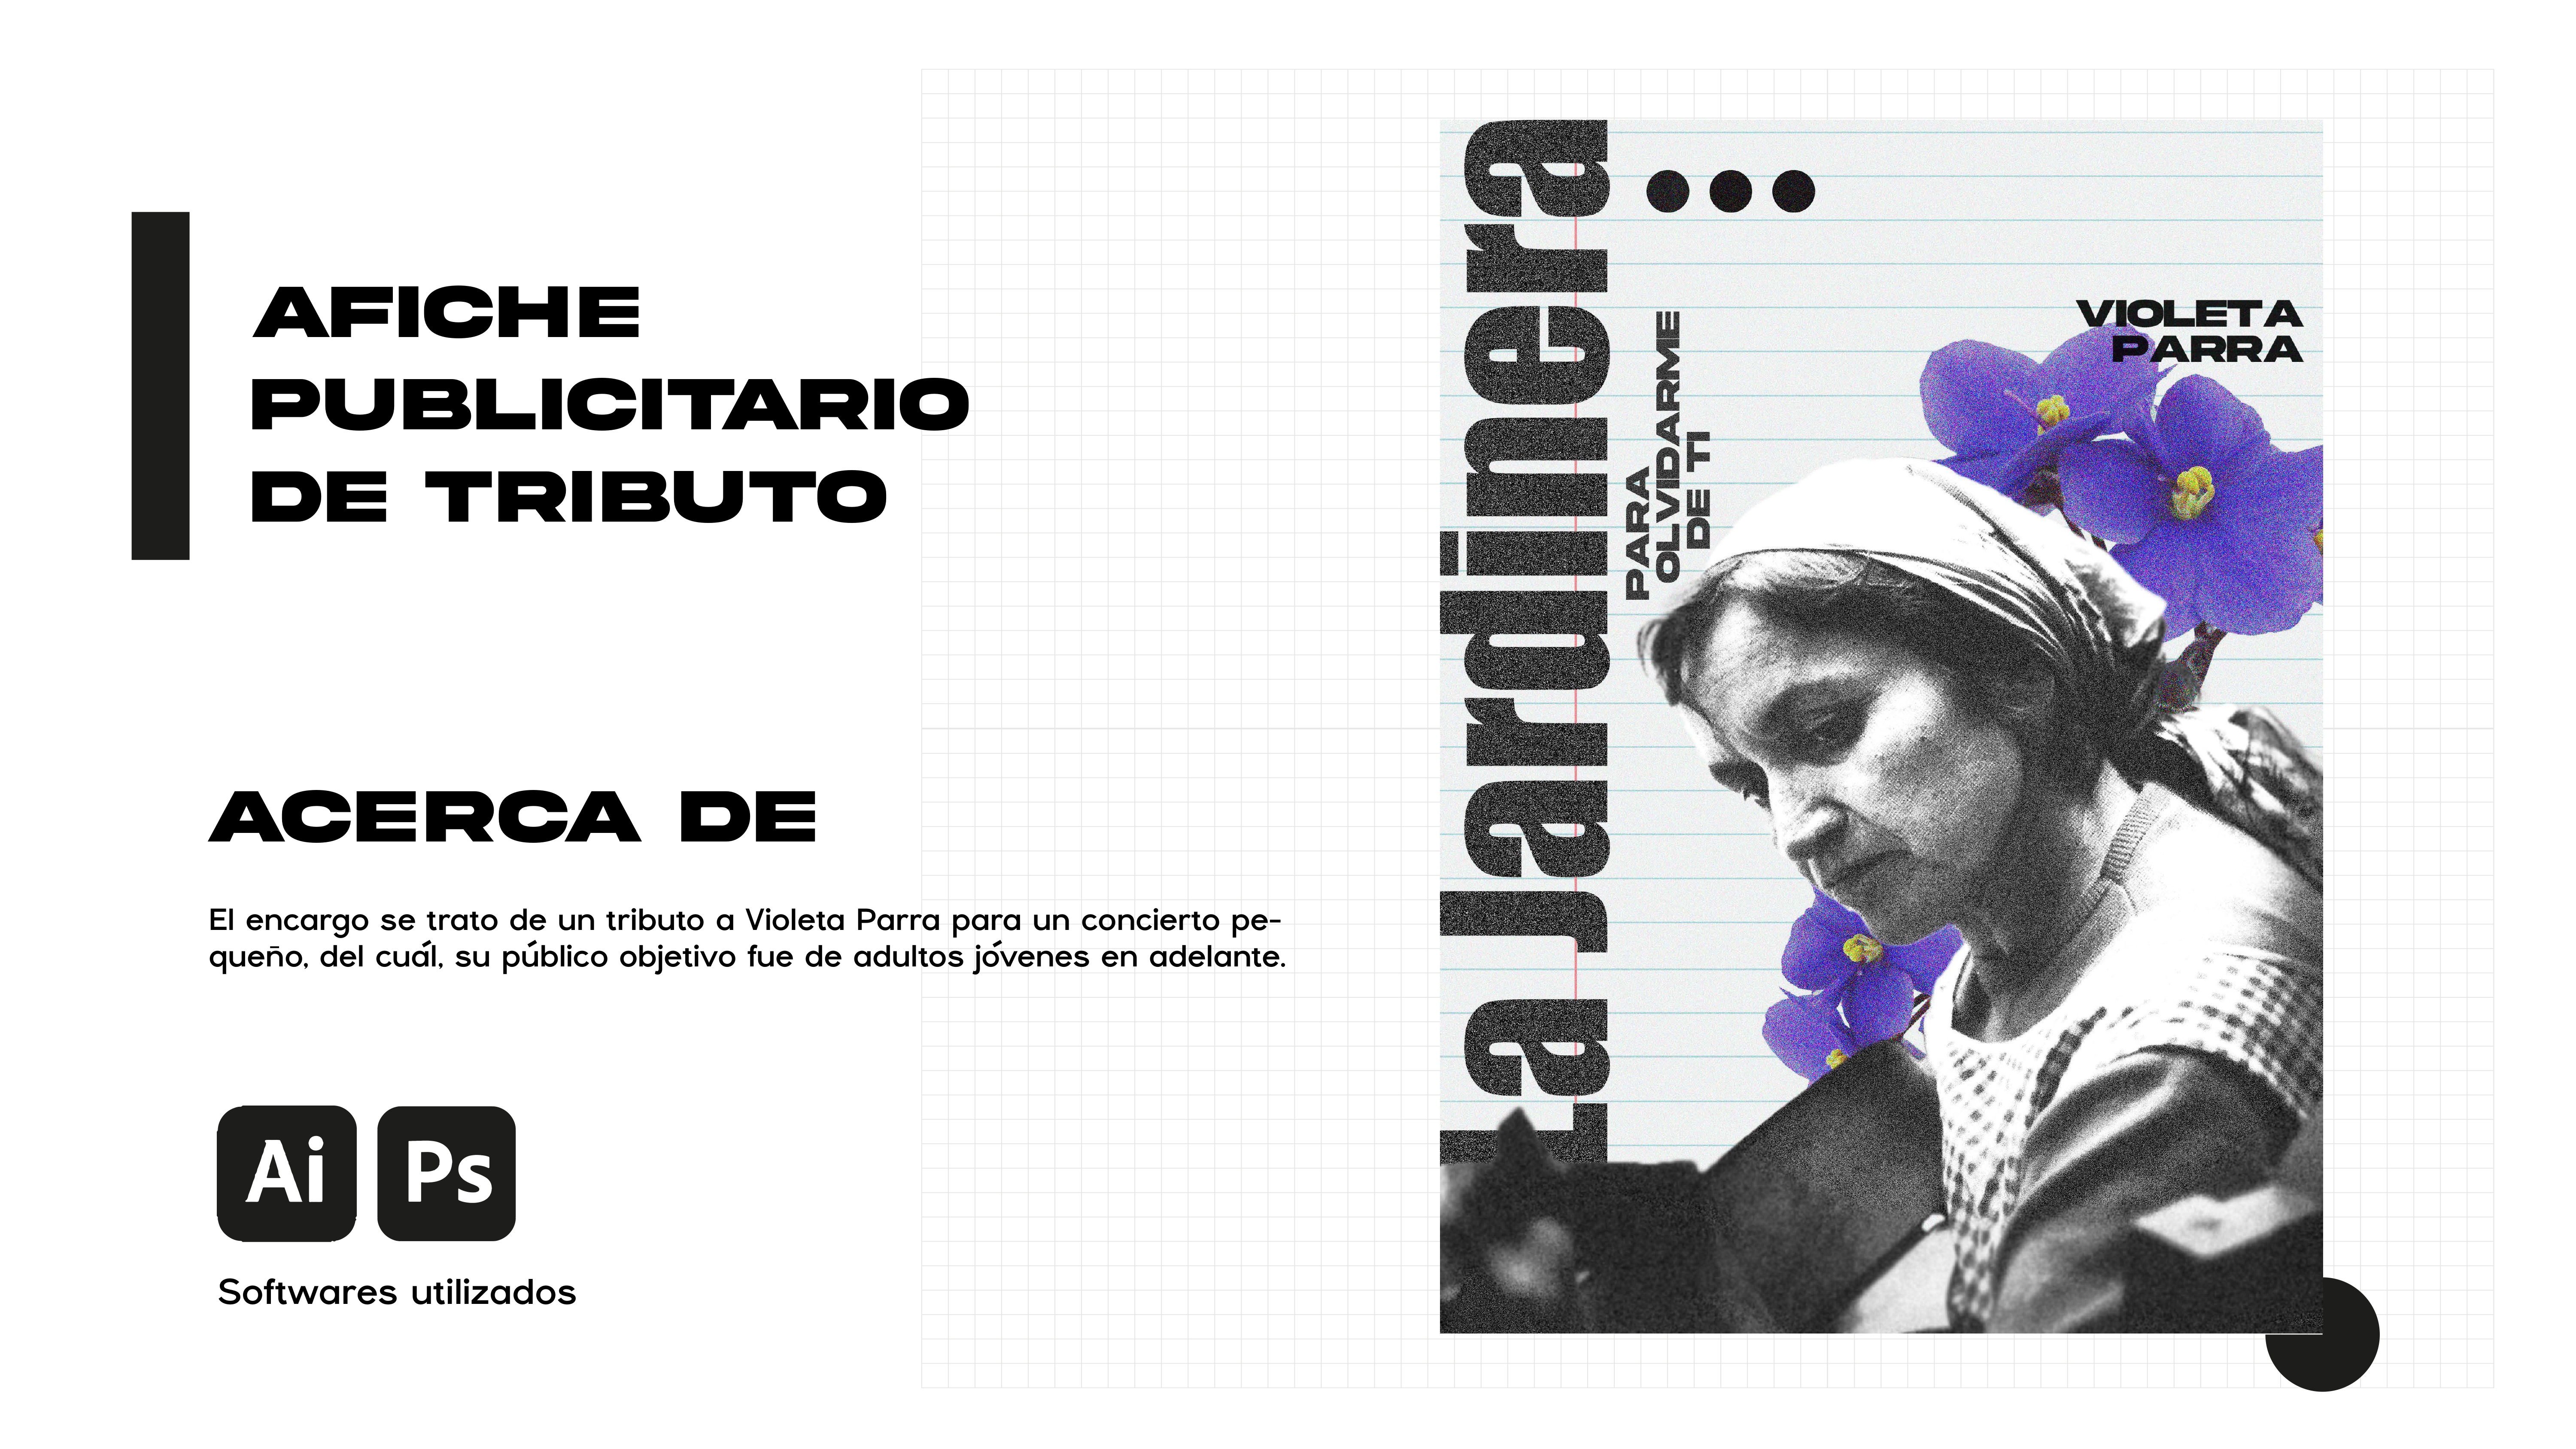 AFICHE
PUBLICITARIO
DE TRIBUTO

ACERCA DE

El encargo se trato de un tributo a Violeta Parra para un concierto pe-
queno, del cudl, su publico objetivo fue de adultos jovenes en adelante.

Softwares utilizados